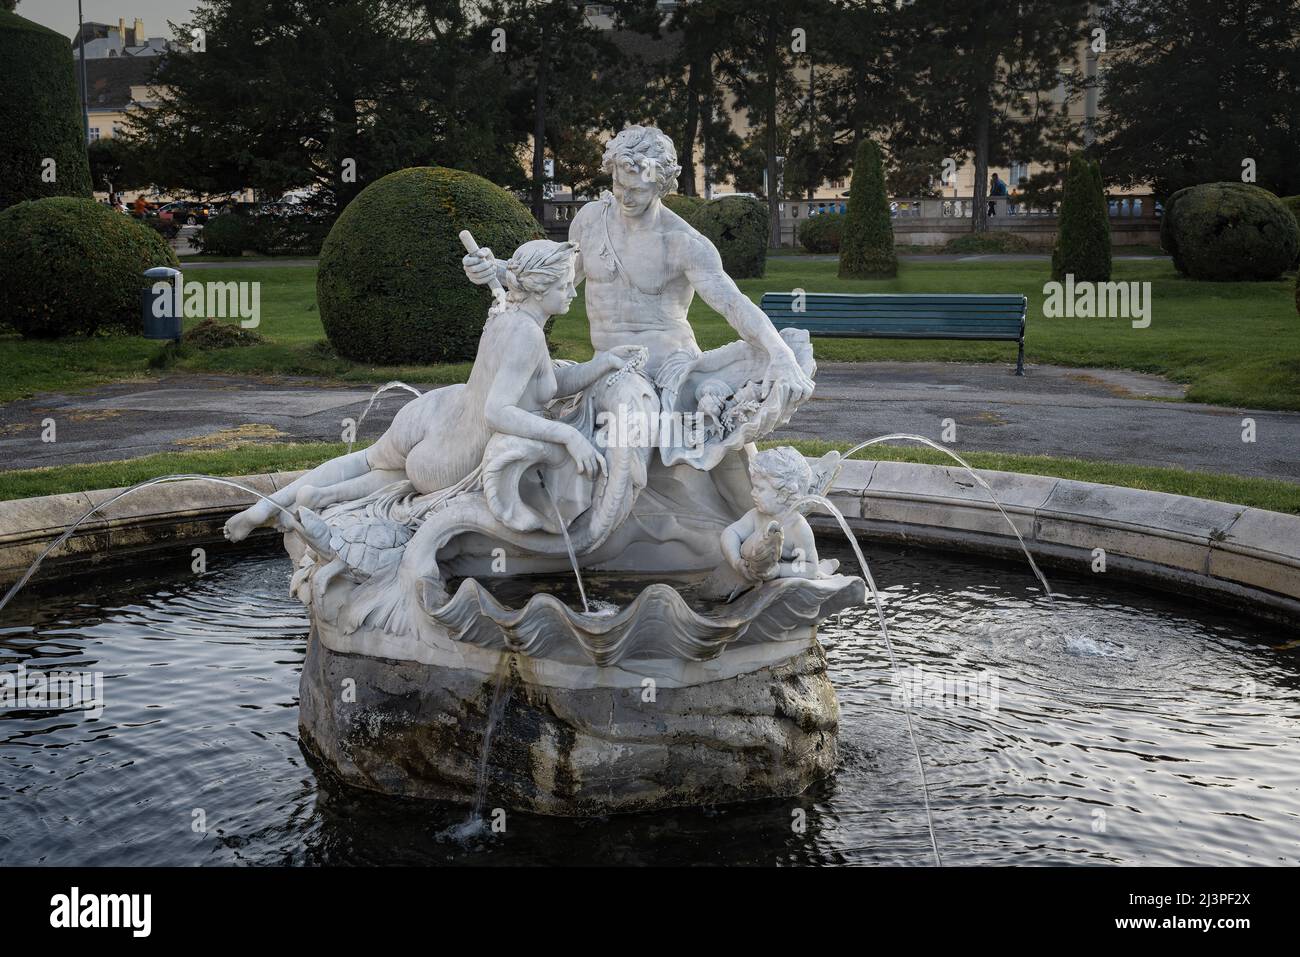 Triton et la fontaine Naiad à la place Maria Theresa (place Maria Theresien) par Edmund Paul Andreas Hofmann von Aspernburg, 1894- Vienne, Autriche Banque D'Images